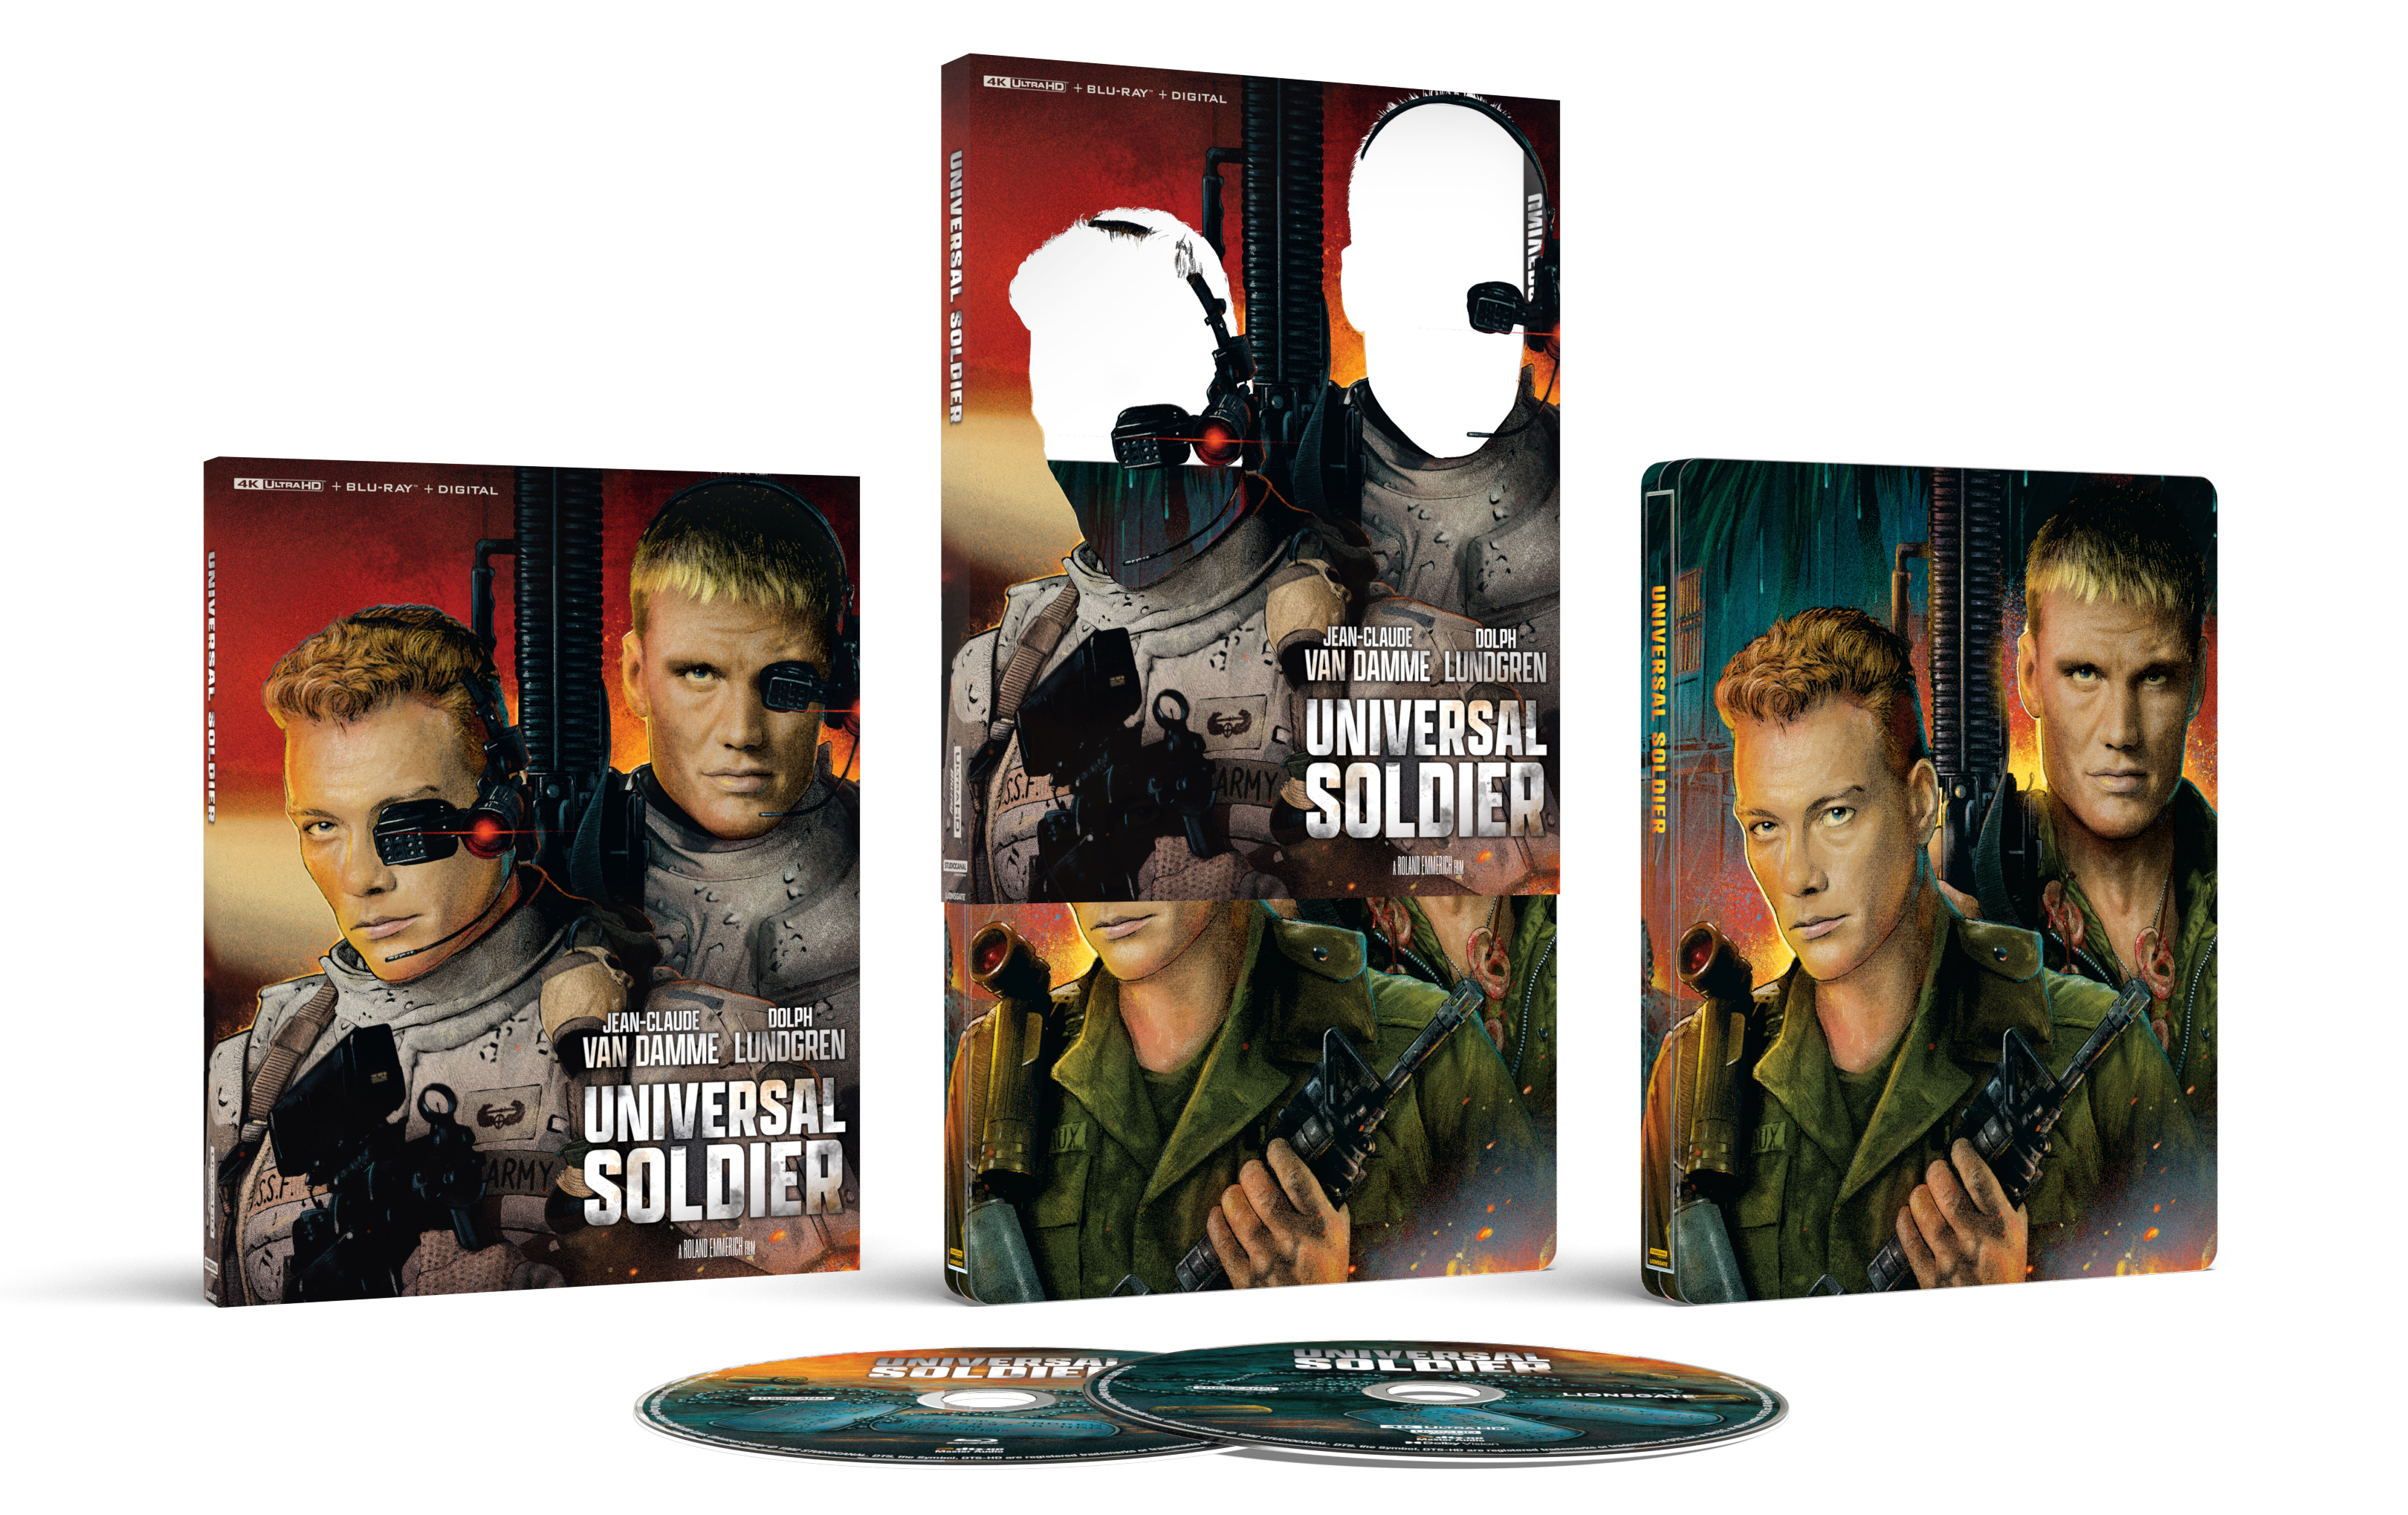 Universal Soldier [SteelBook] [Digital Copy] [4K Ultra HD Blu-ray/Blu-ray]  [Only @ Best Buy] [1992] - Best Buy